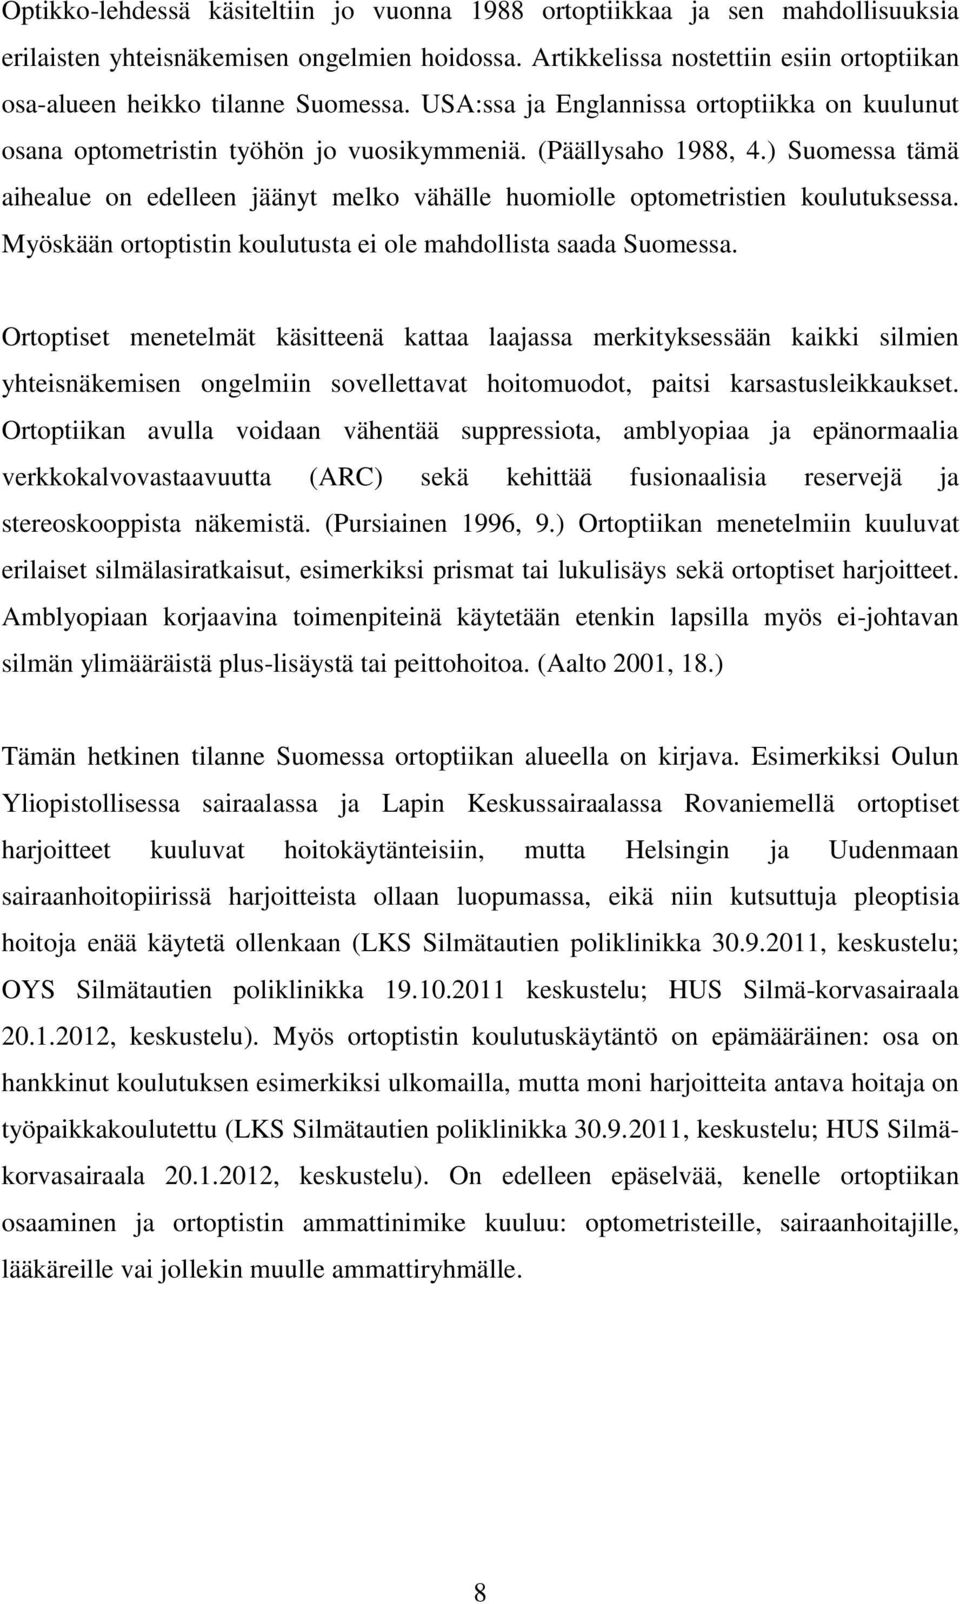 ) Suomessa tämä aihealue on edelleen jäänyt melko vähälle huomiolle optometristien koulutuksessa. Myöskään ortoptistin koulutusta ei ole mahdollista saada Suomessa.